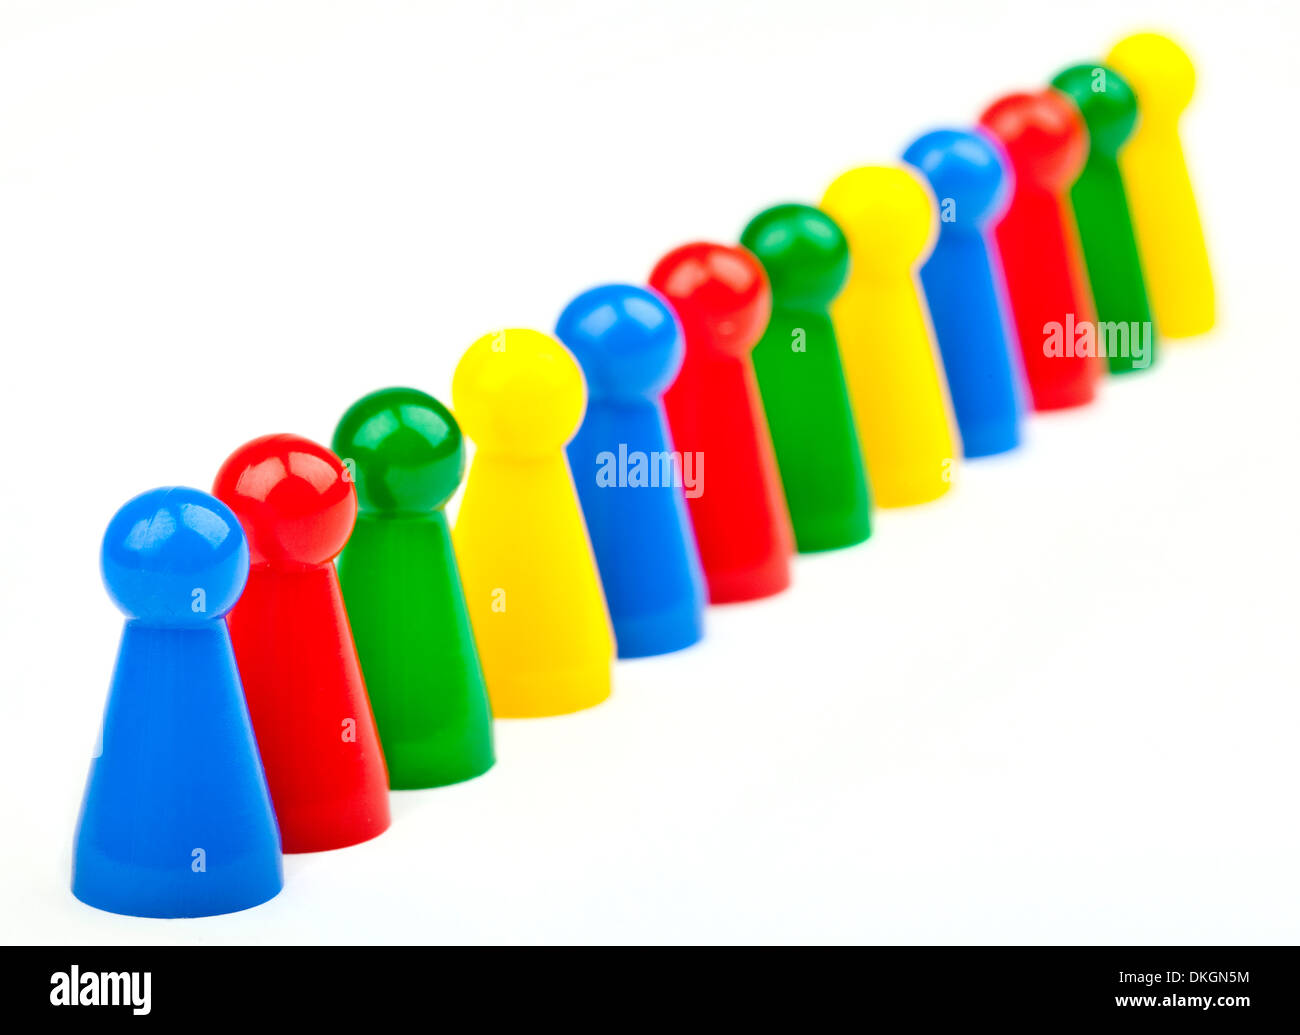 Azul, rojo, verde y amarillo piezas de juego/Fligures. Foto de stock